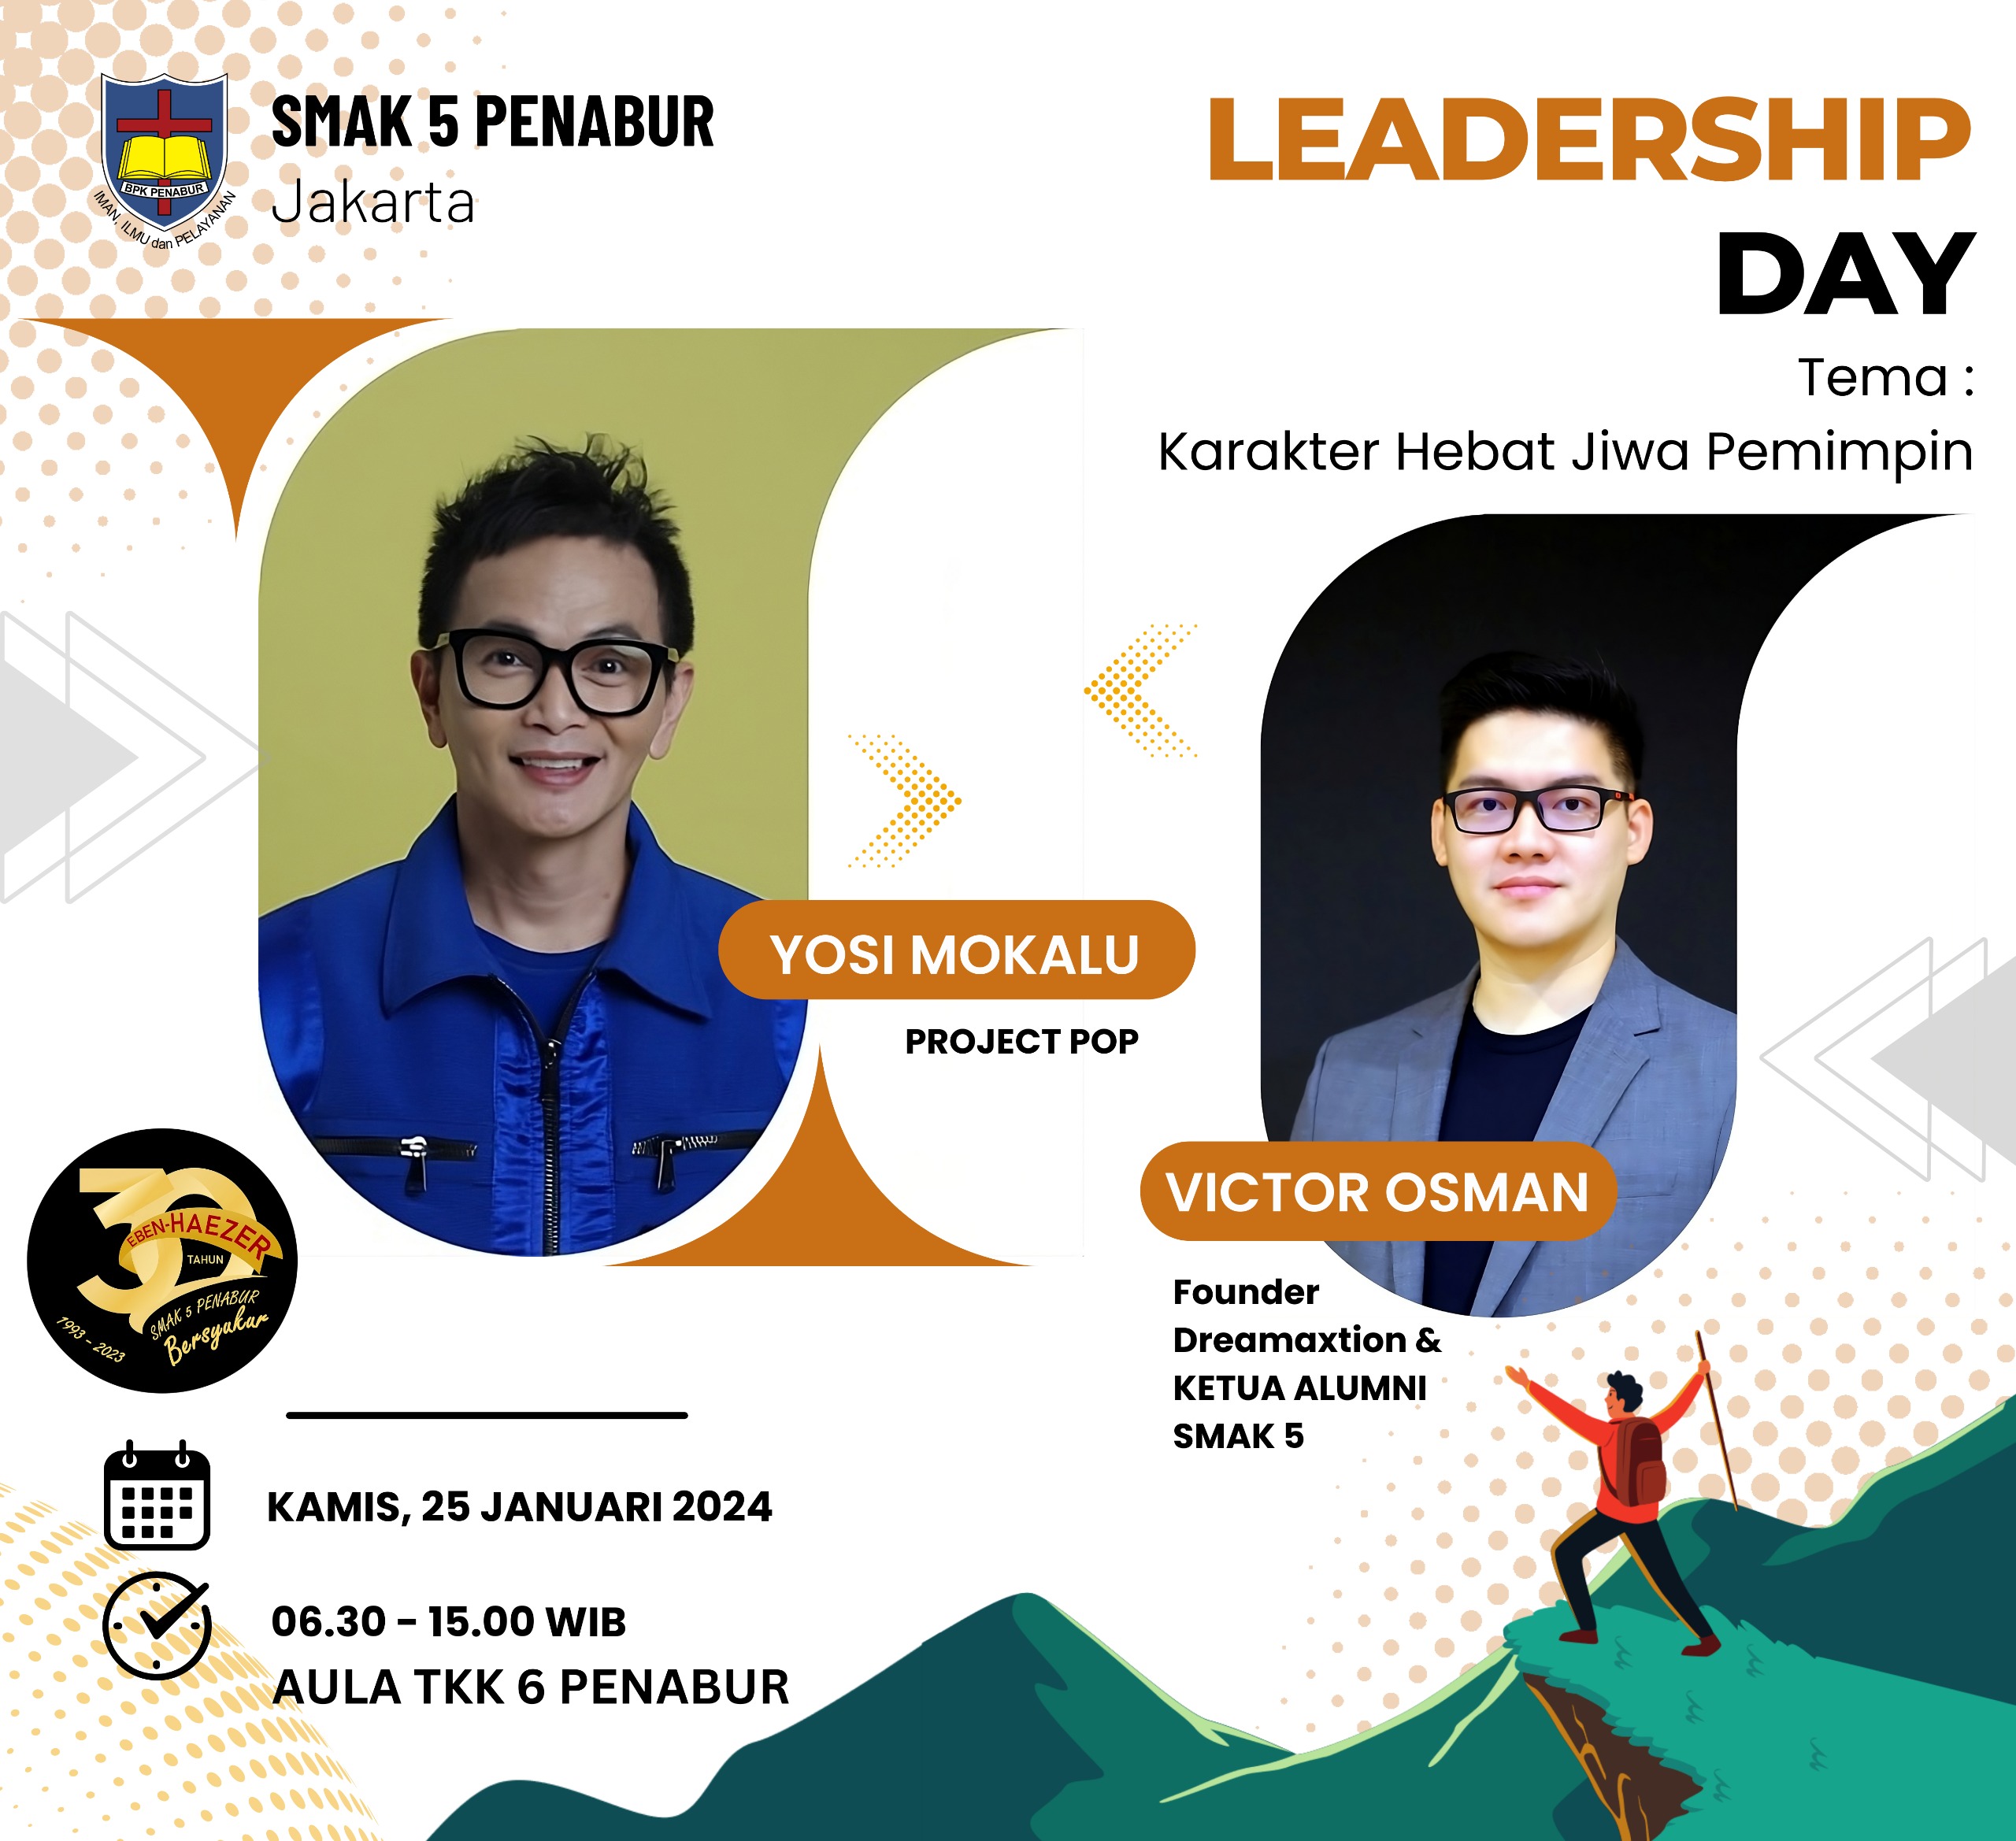 Leadership Day SMAK 5 2024: Karakter Hebat Jiwa Pemimpin